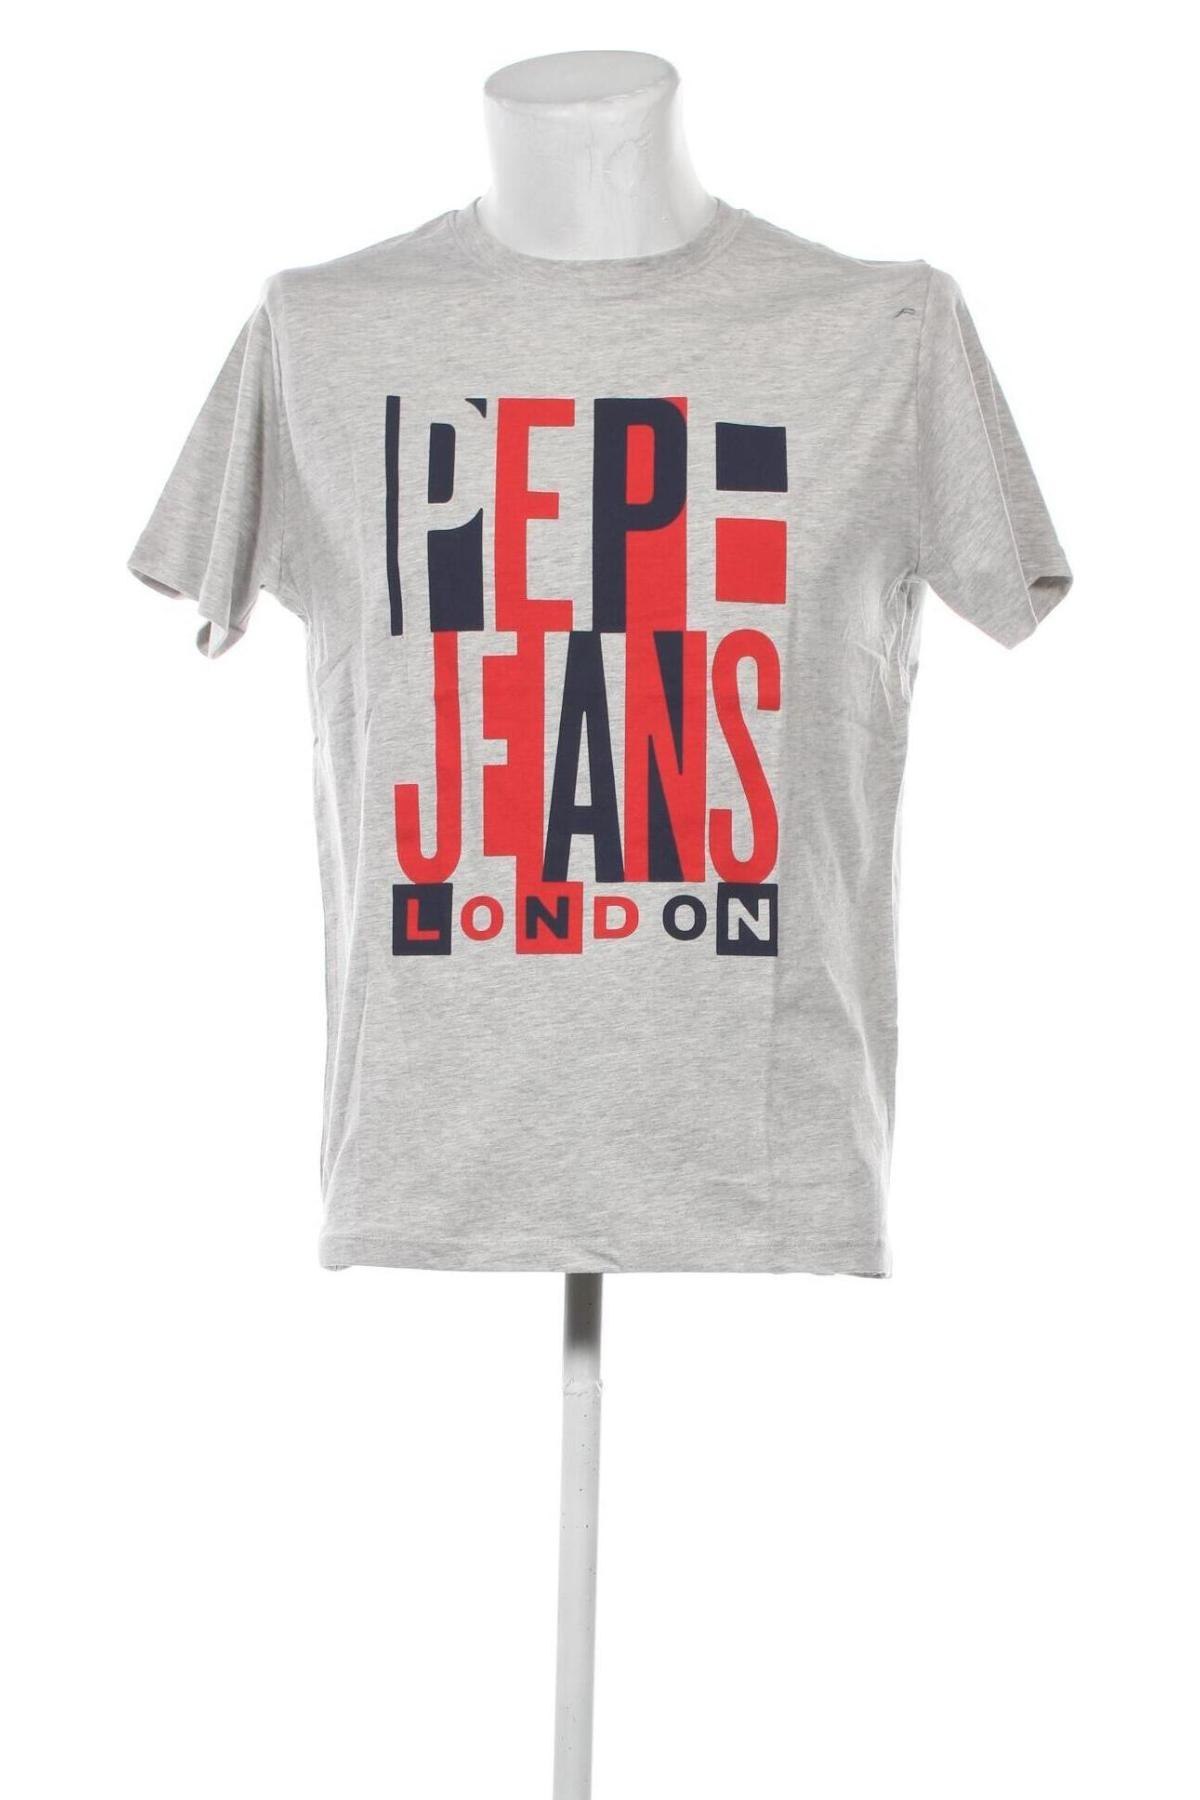 Pepe günstig Remix bei - T-Shirt #123455064 - Herren Jeans